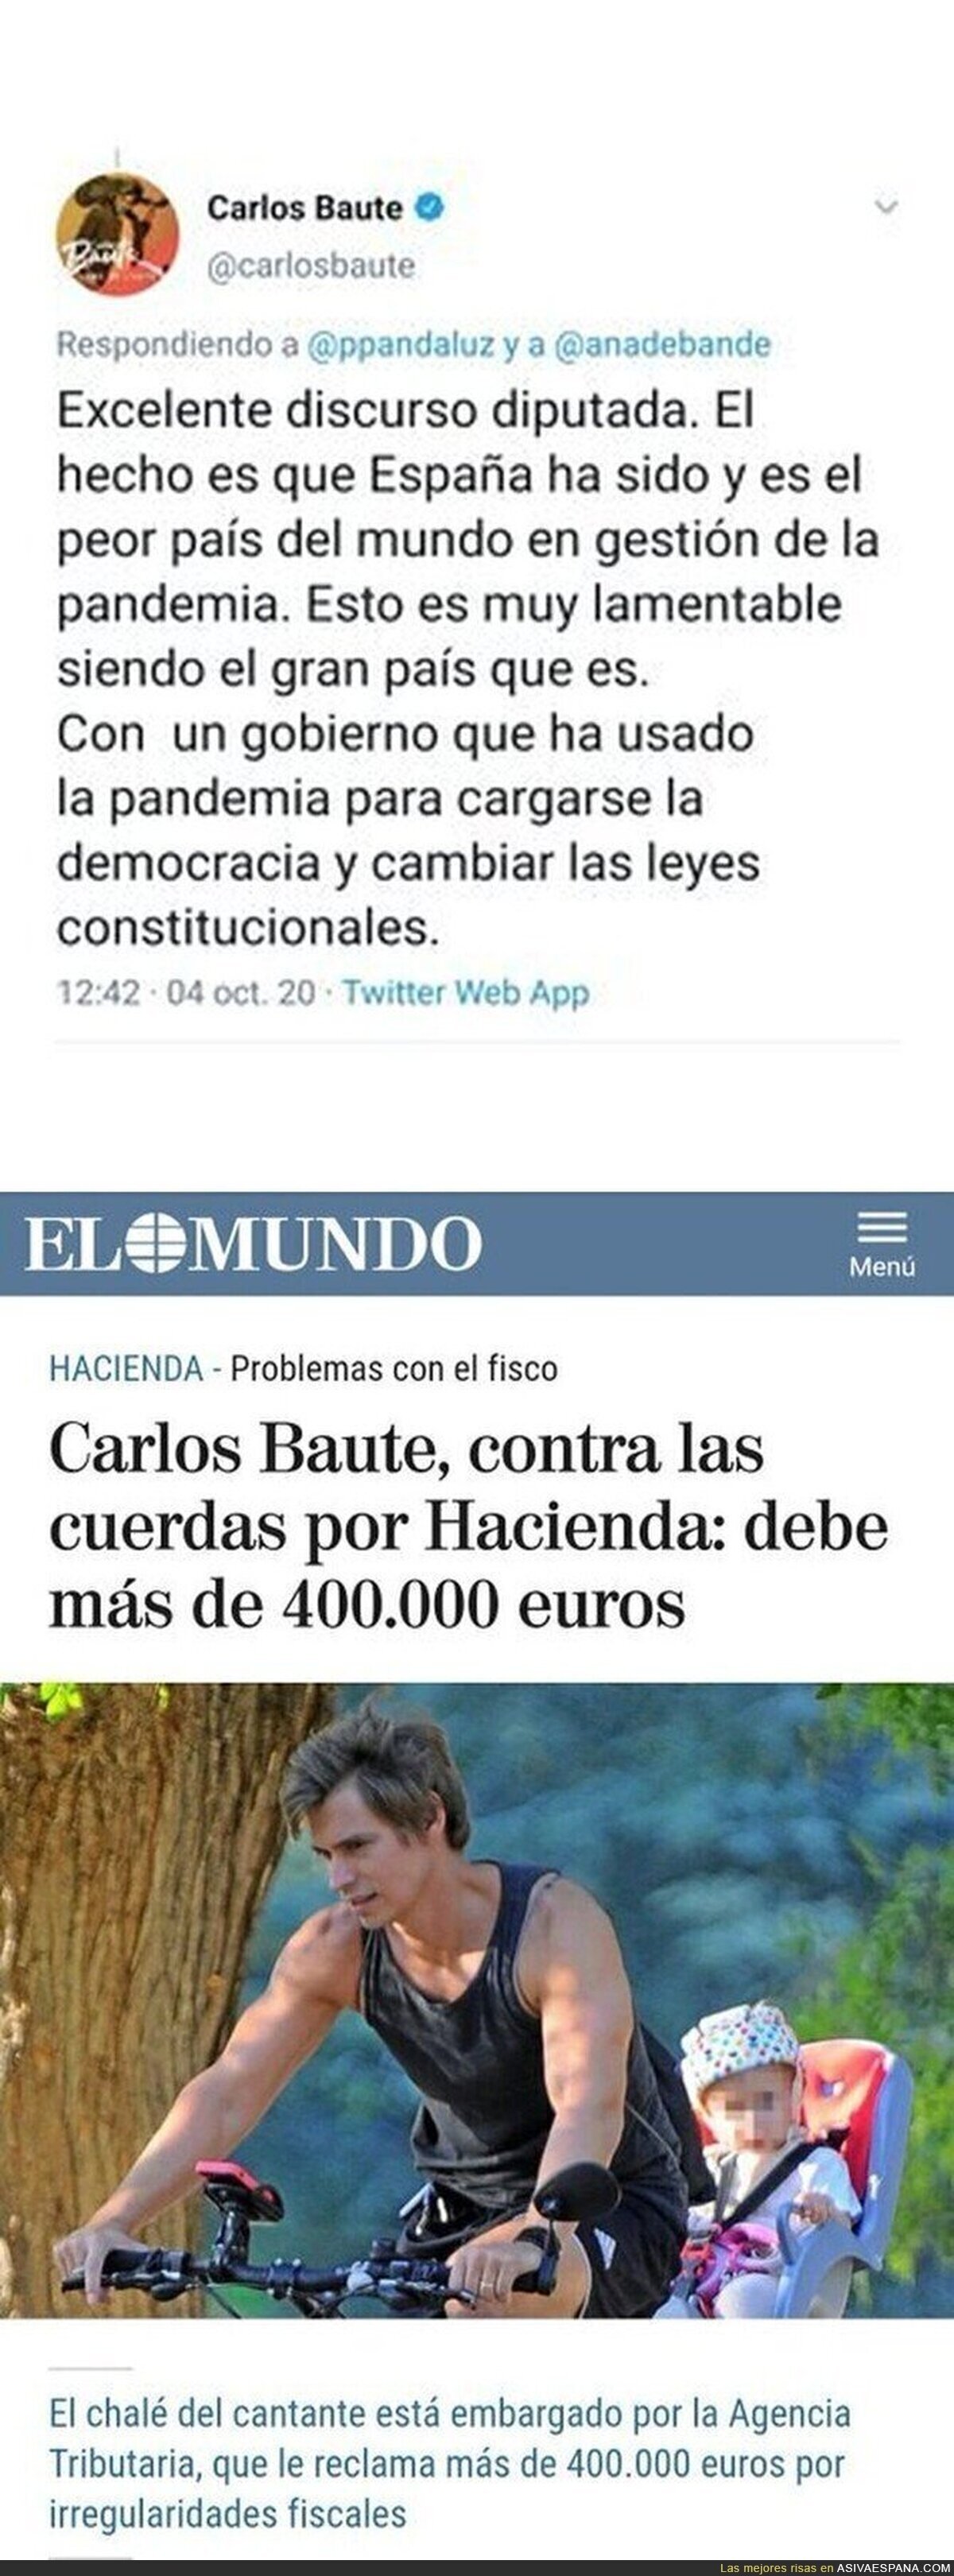 Todo cuadra con la ideología política de Carlos Baute